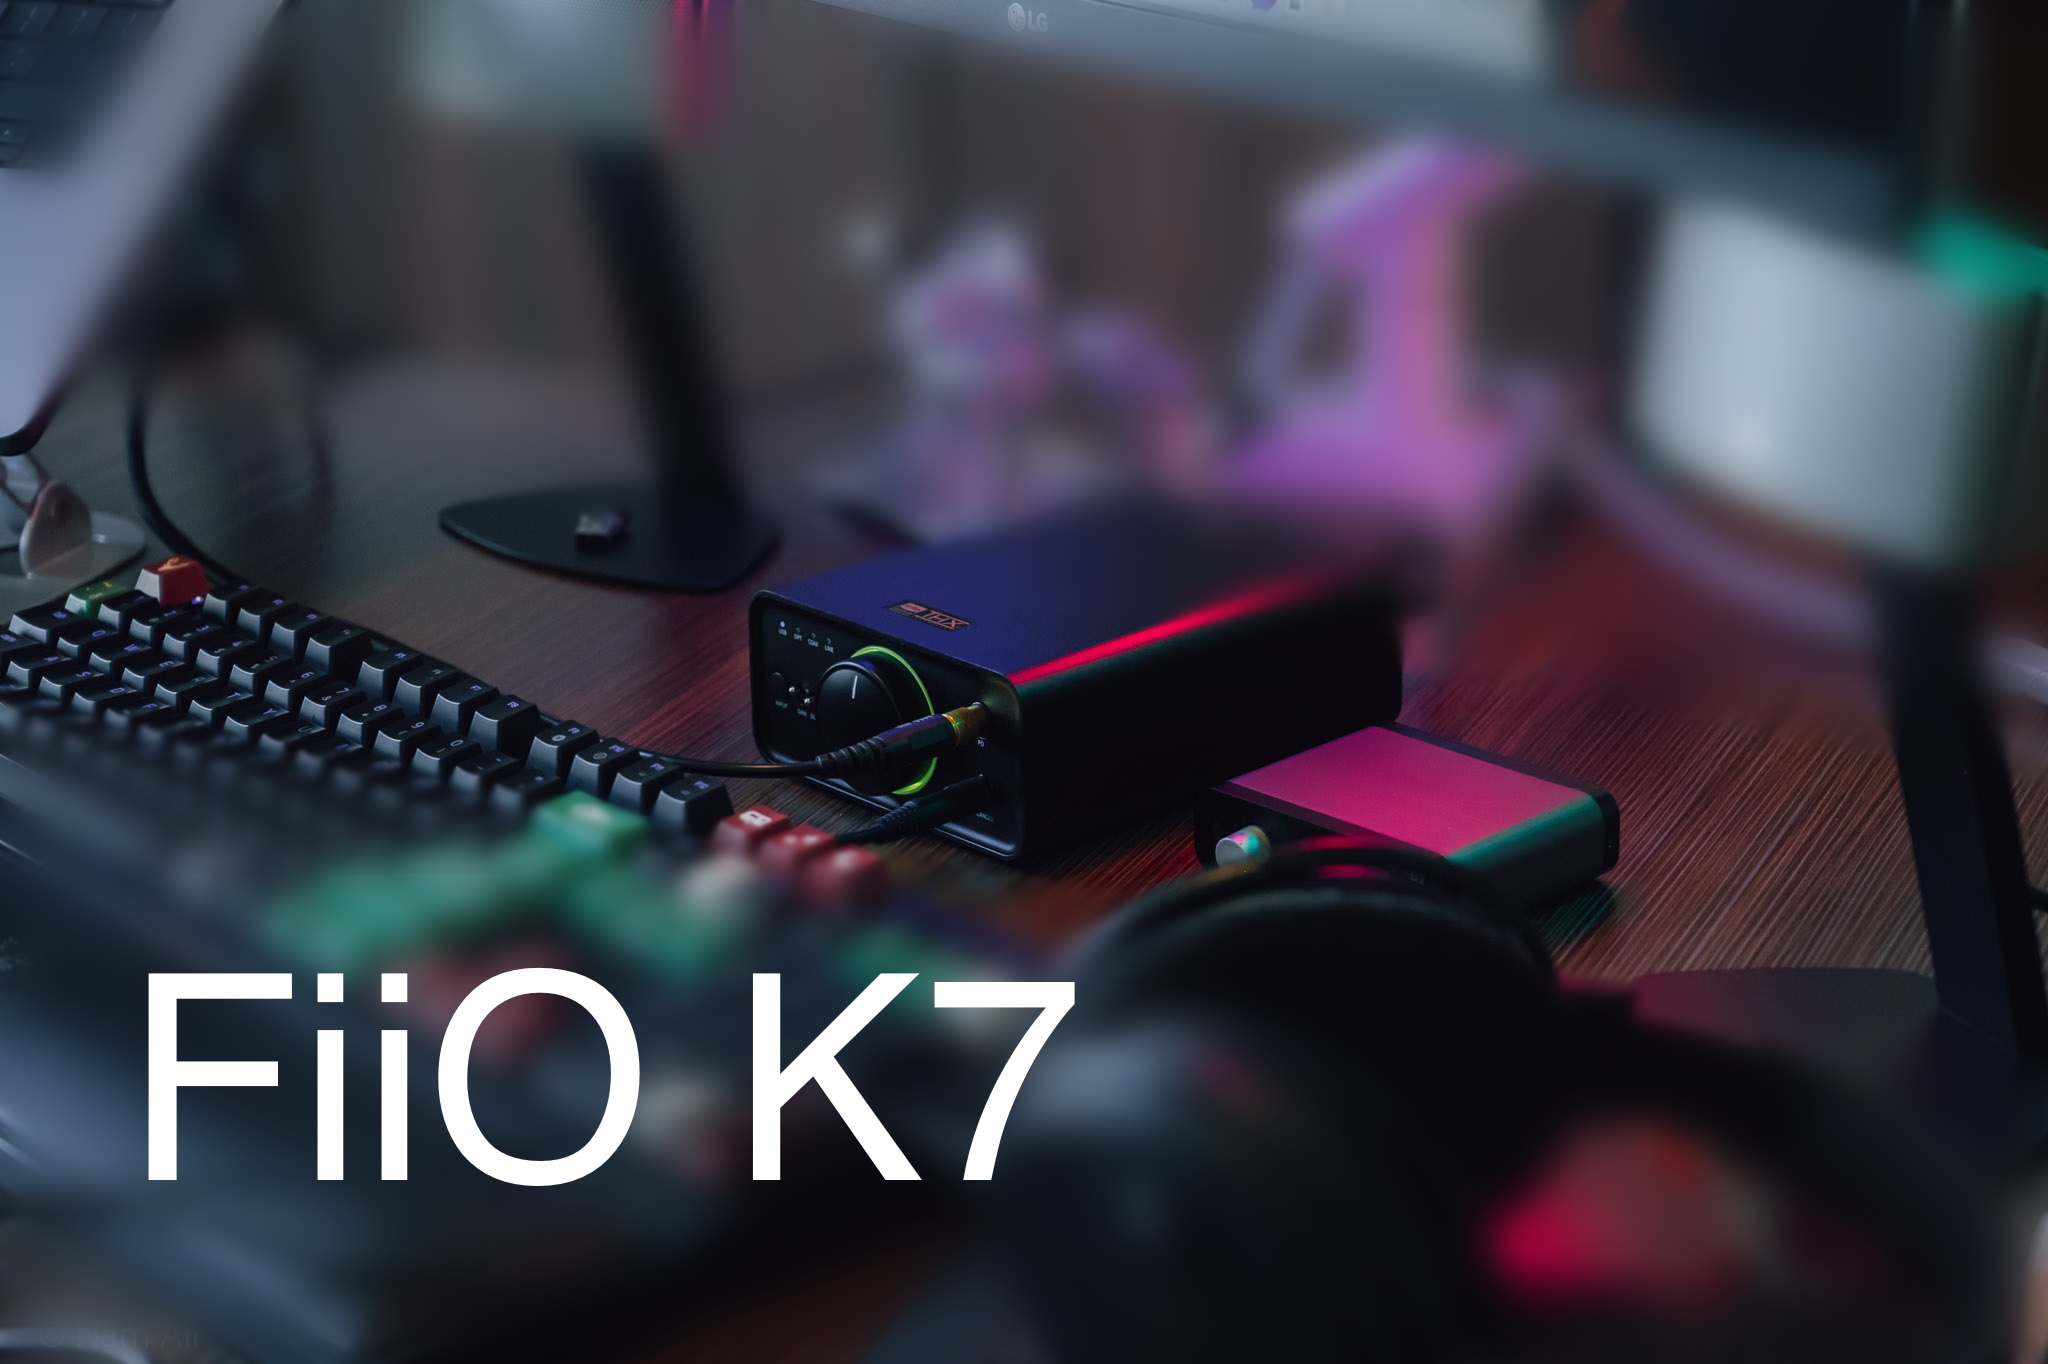 Trên tay FiiO K7: Dual DAC AKM, THX 788+, giá khá ổn để trải nghiệm Hi-Res Audio